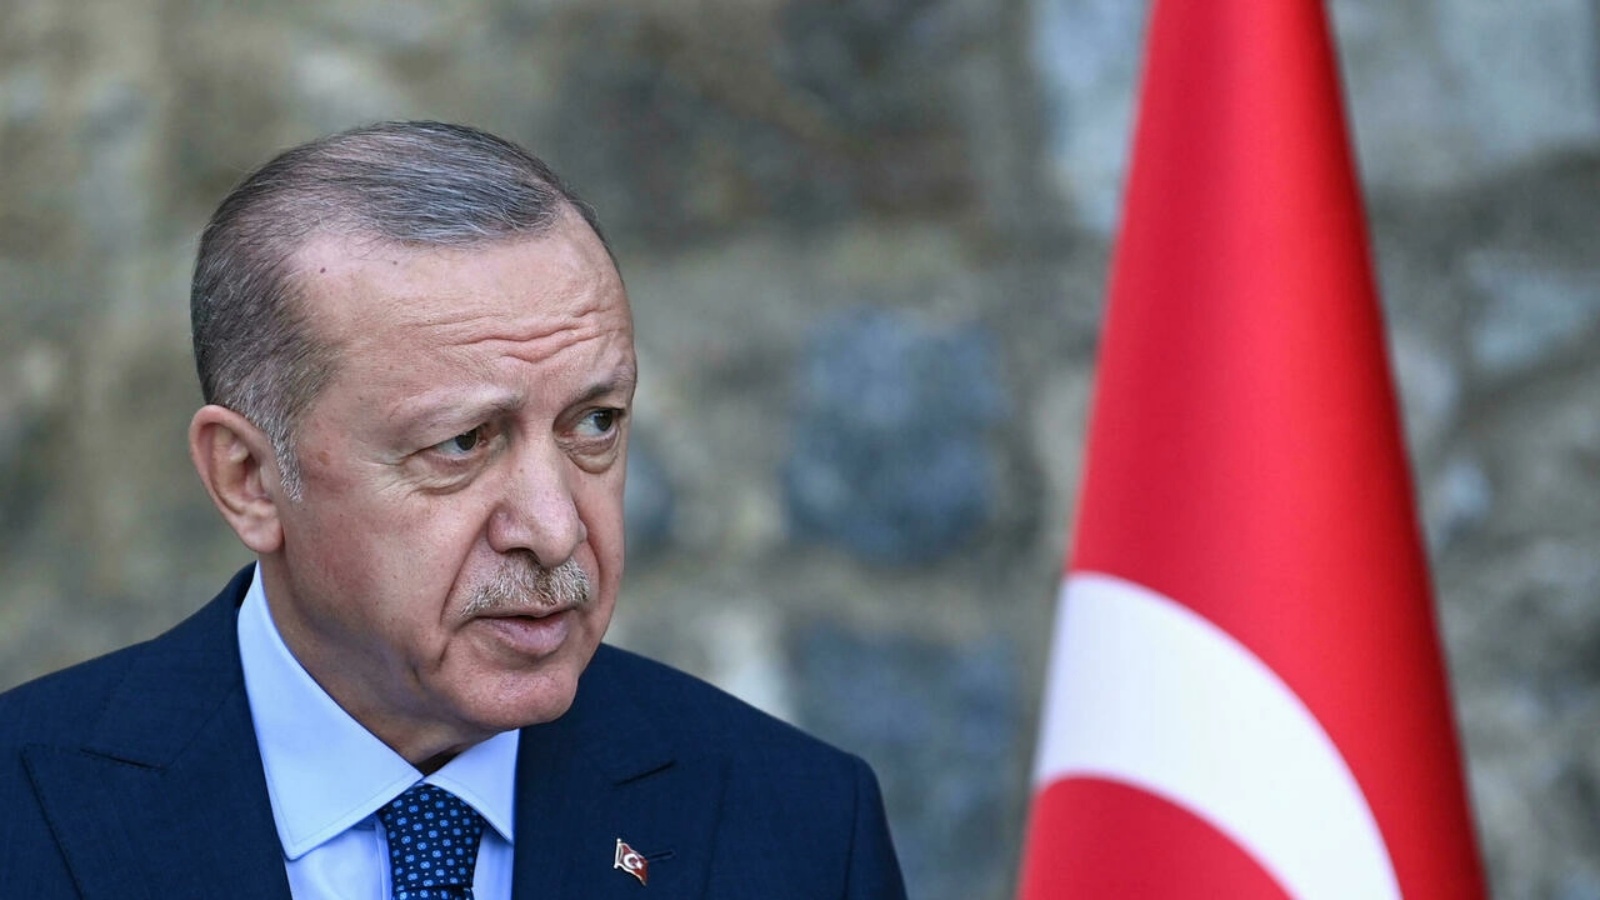 الرئيس التركي رجب طيب أردوغان. (أرشيفية)